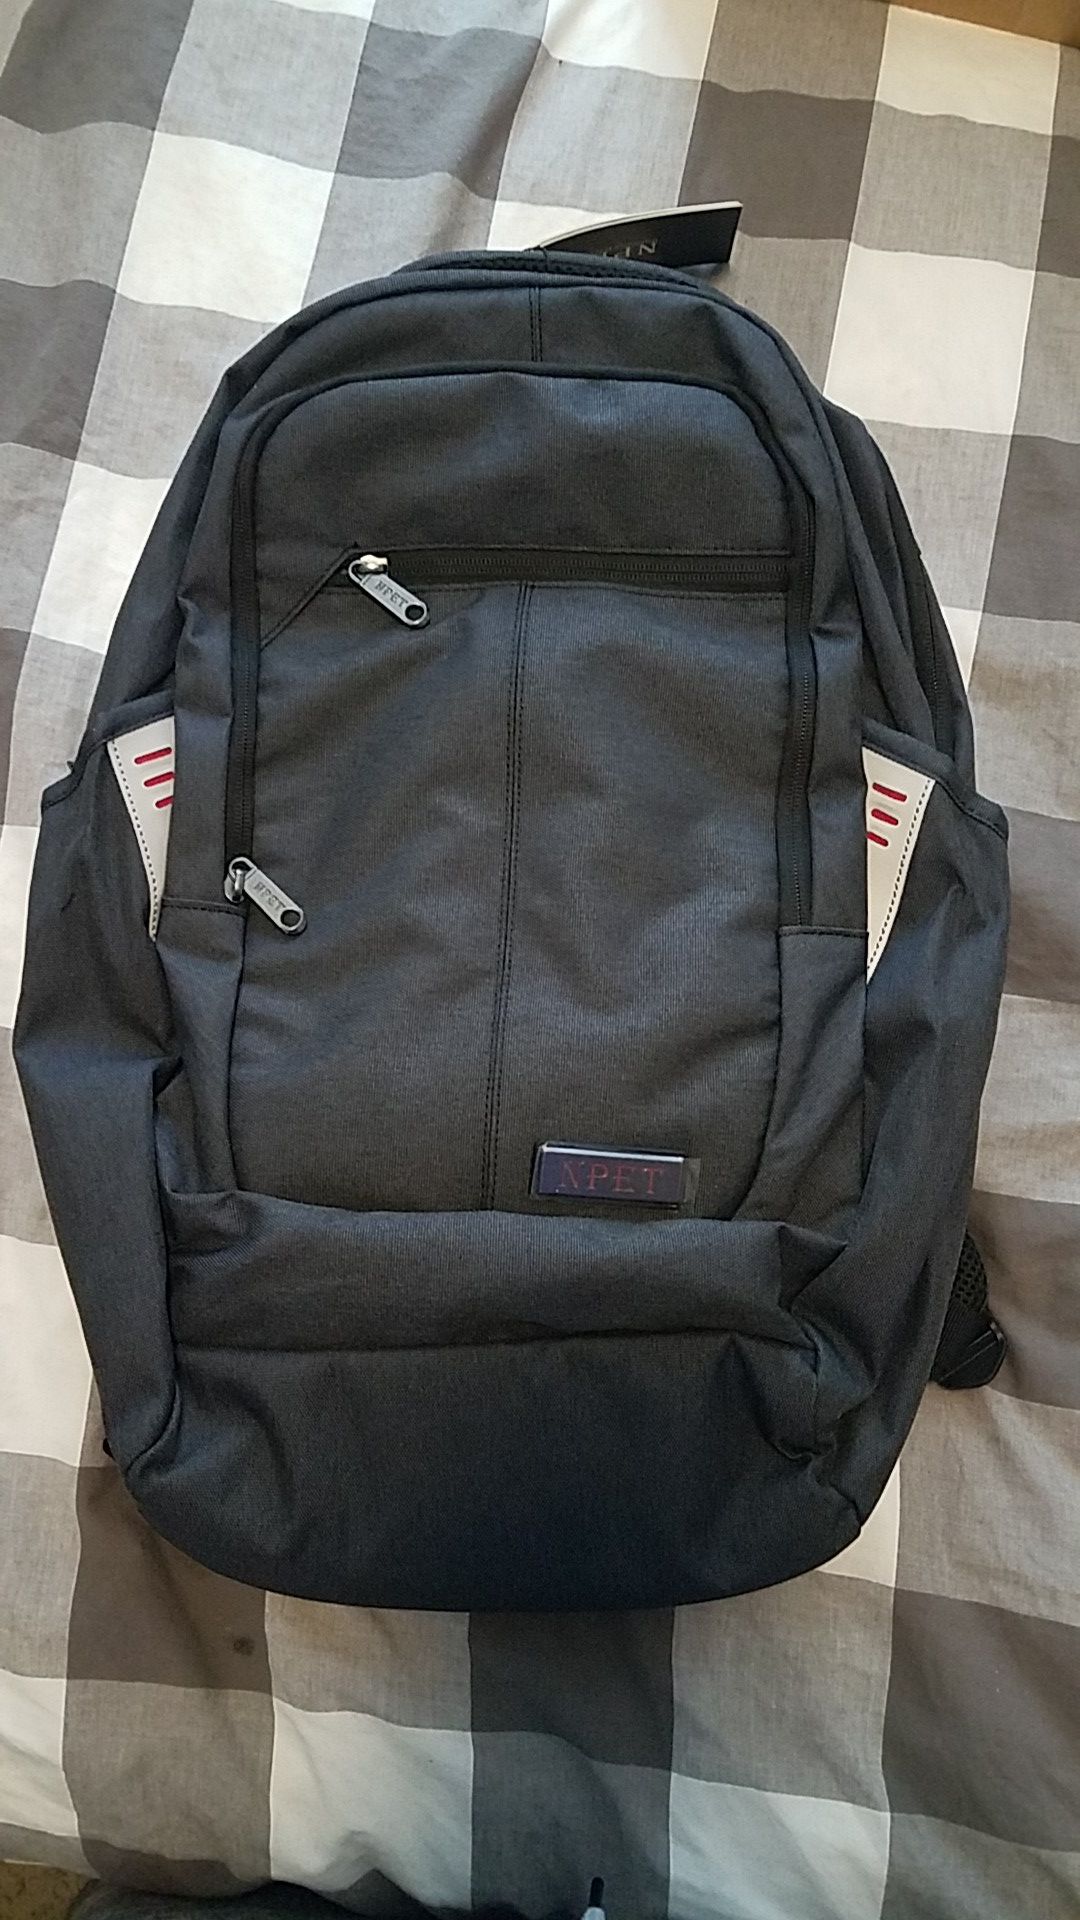 Waterproof Laptop Backpack - Black - back to school.